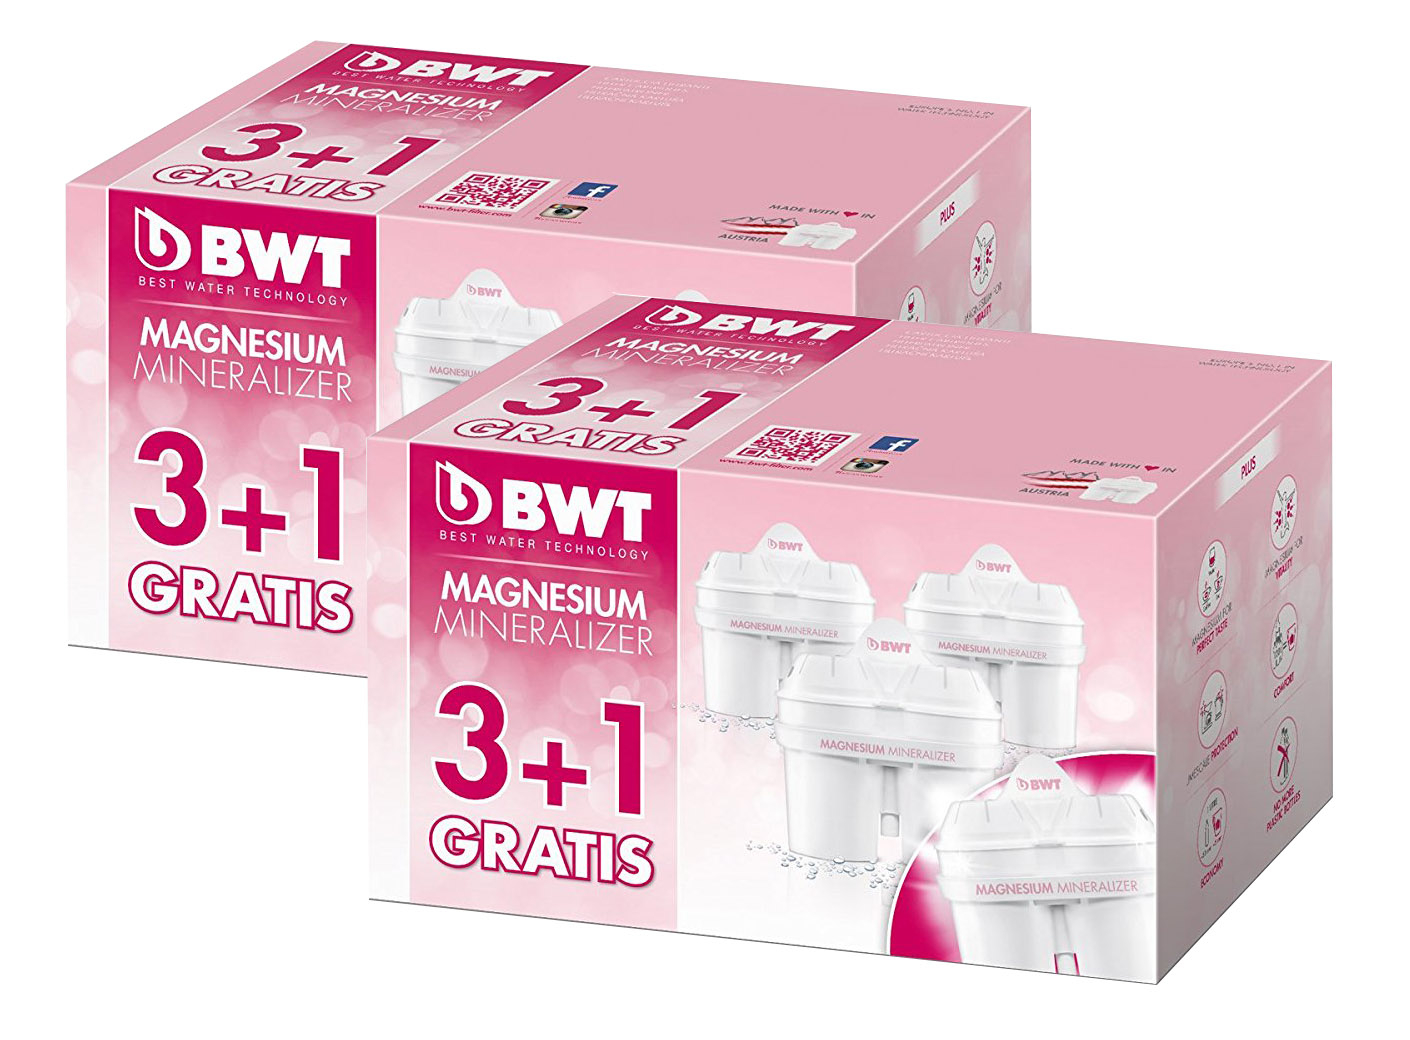 Filtre Gerra aigua BWT Gourmet Mg2 120 lt. - Compatible BRITA